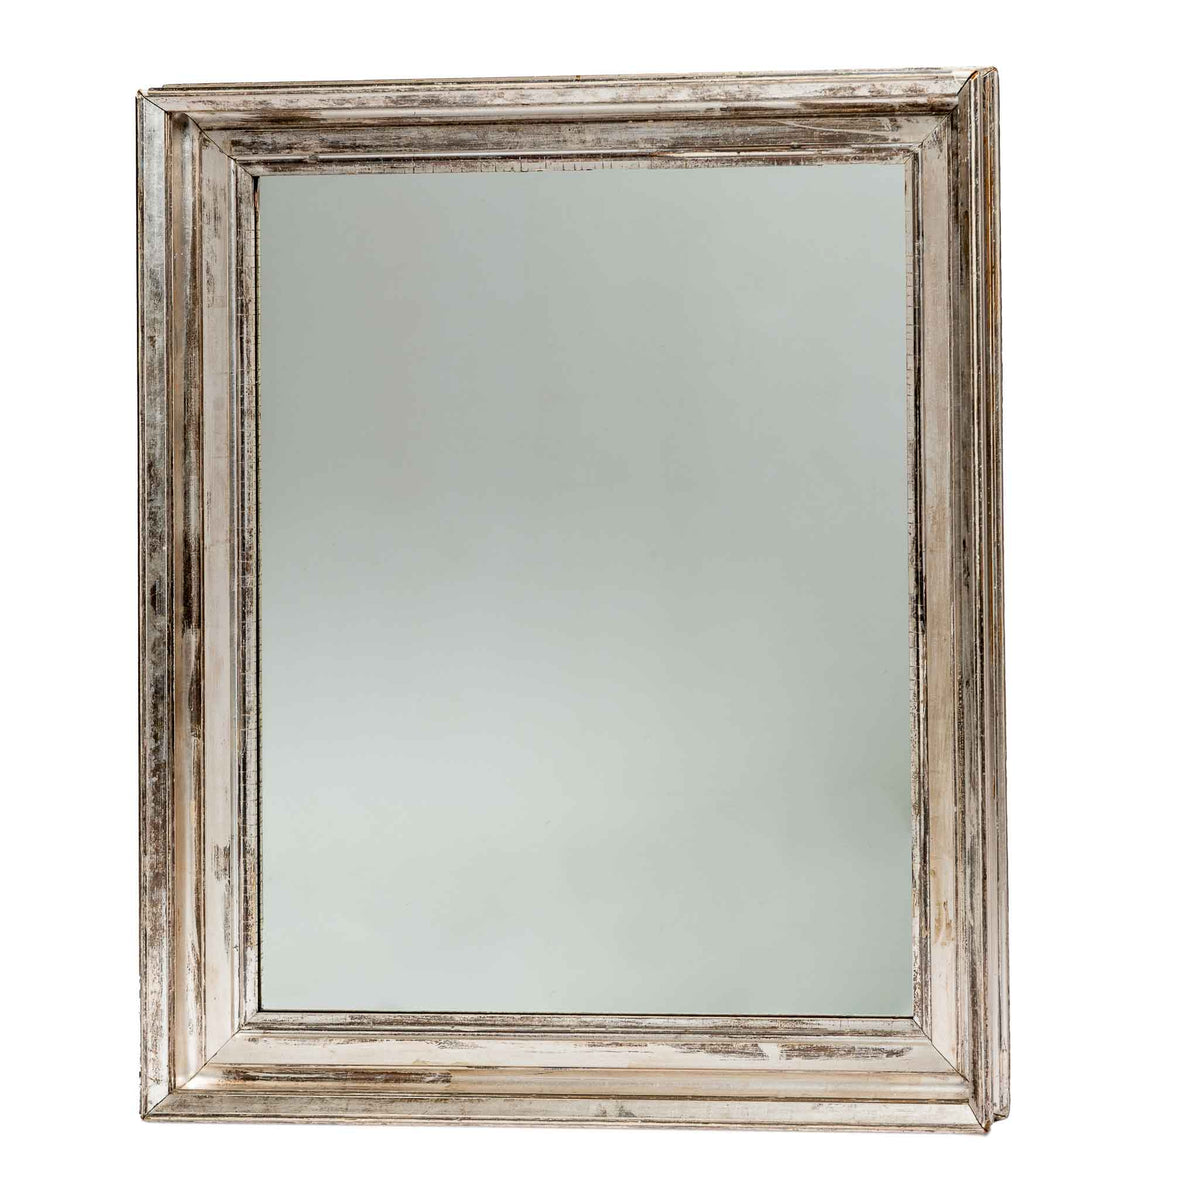 Silver gilt mirror S1 F31